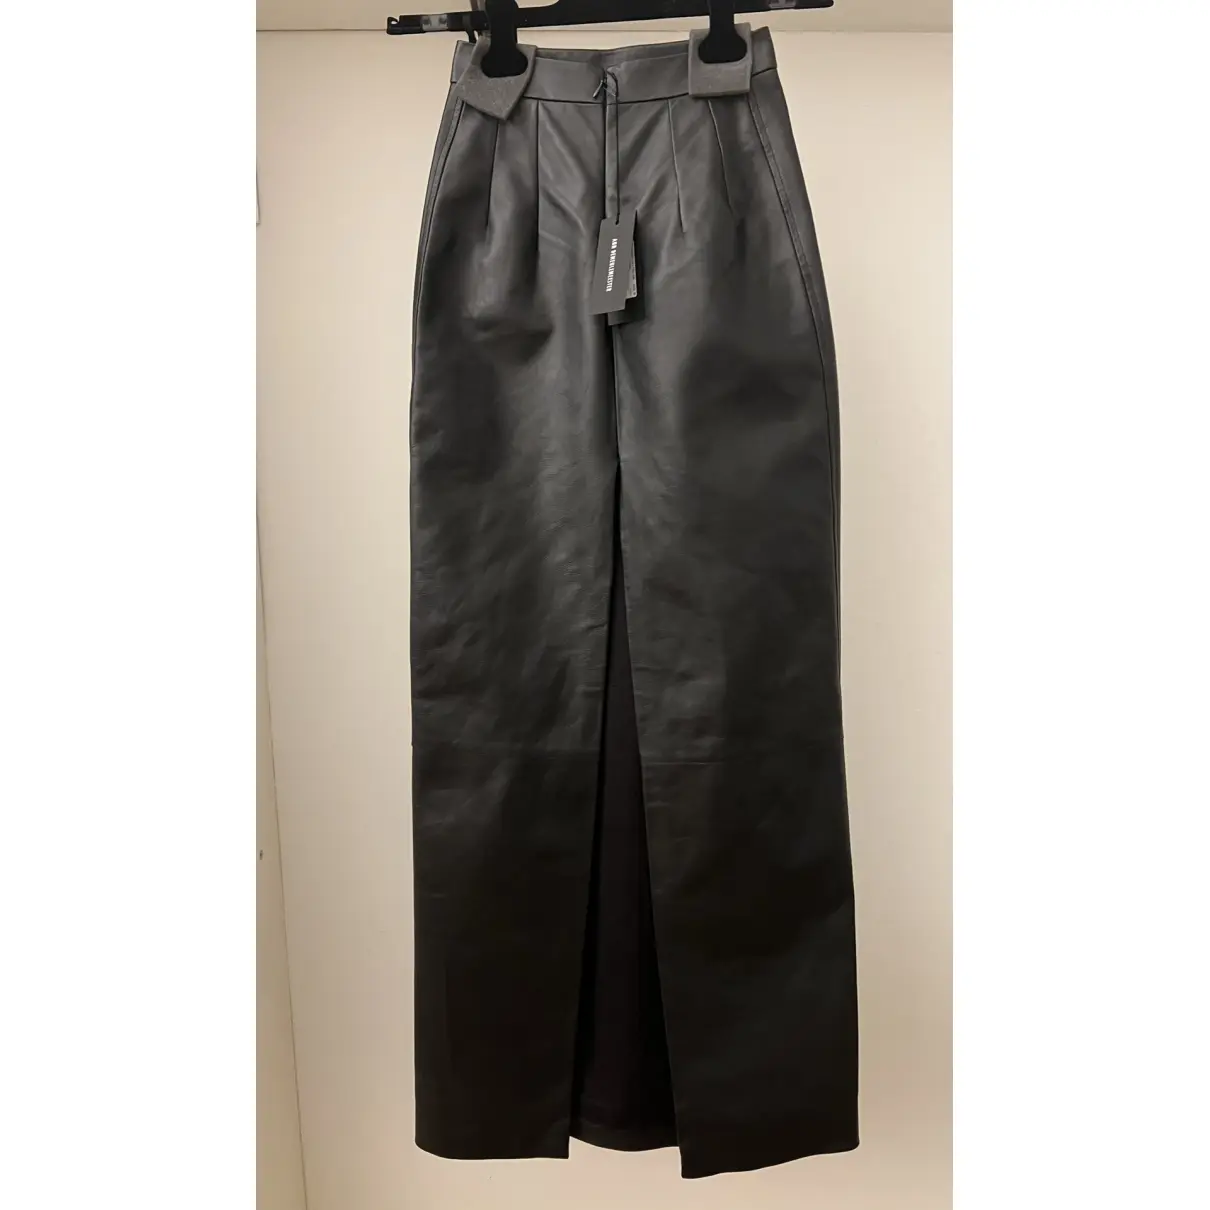 Buy Ann Demeulemeester Leather maxi skirt online